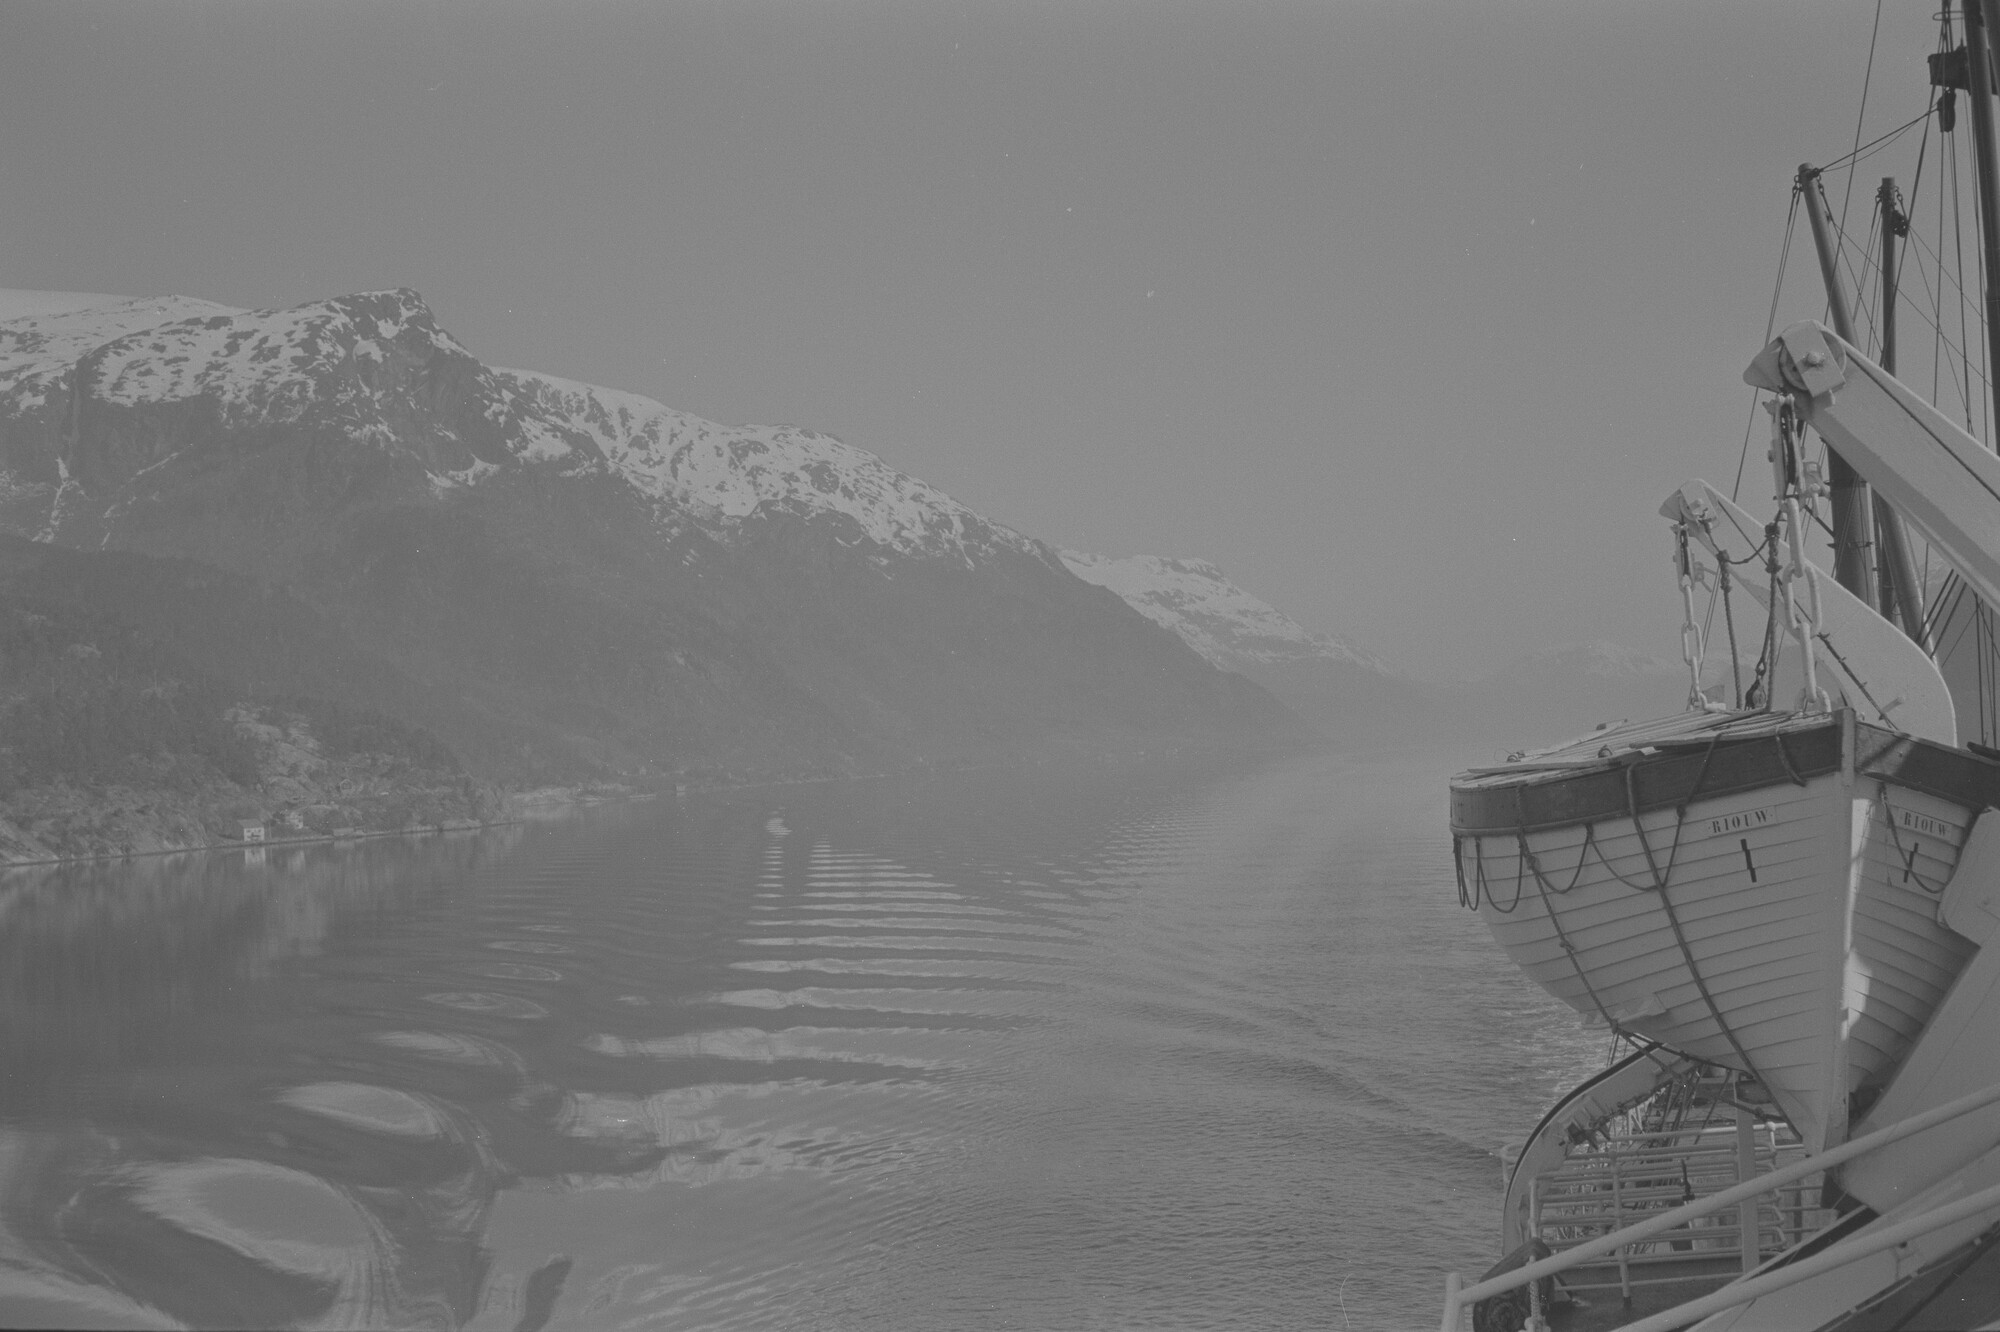 2015.1430; Negatief van ss. Riouw varend in een fjord in Noorwegen; negatief